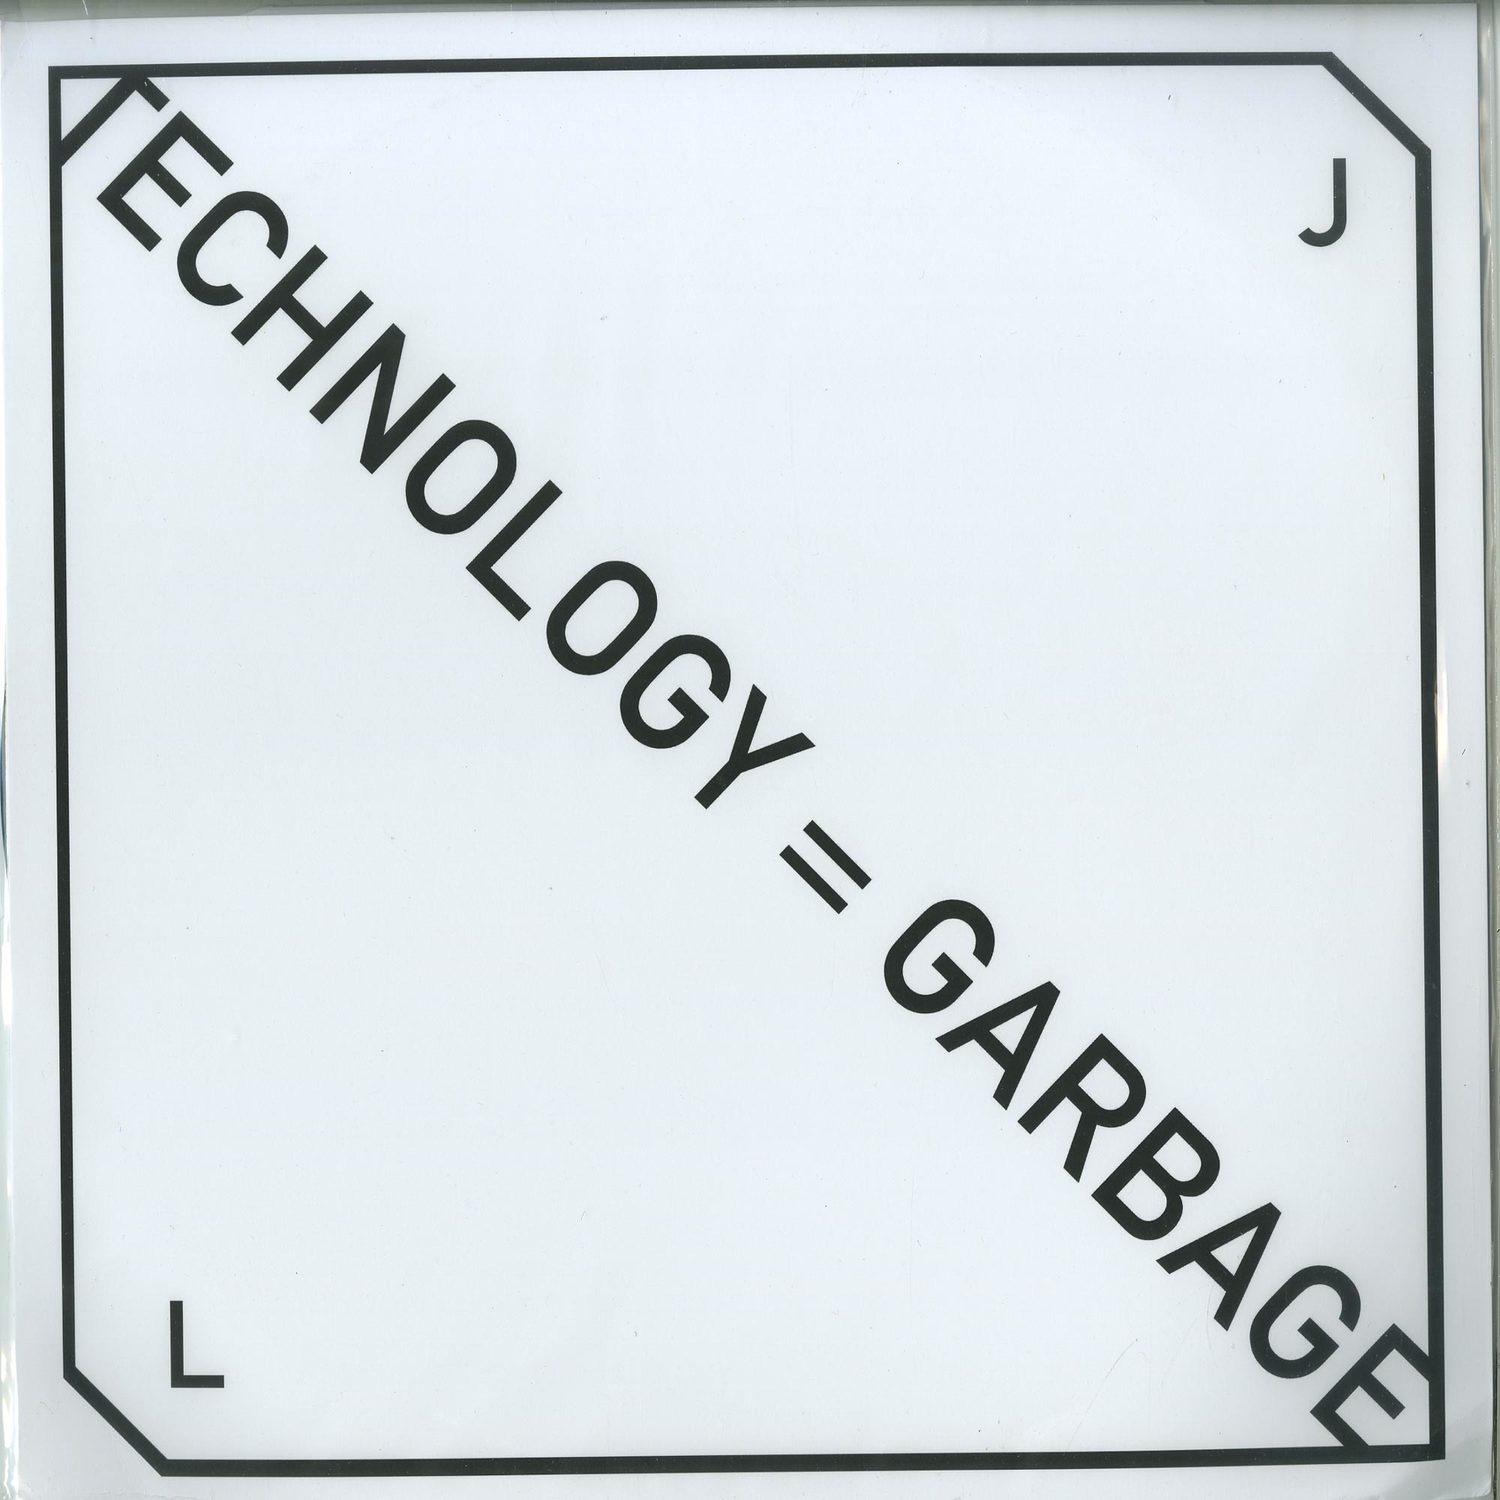 JL - TECHNOLOGY = GARBAGE